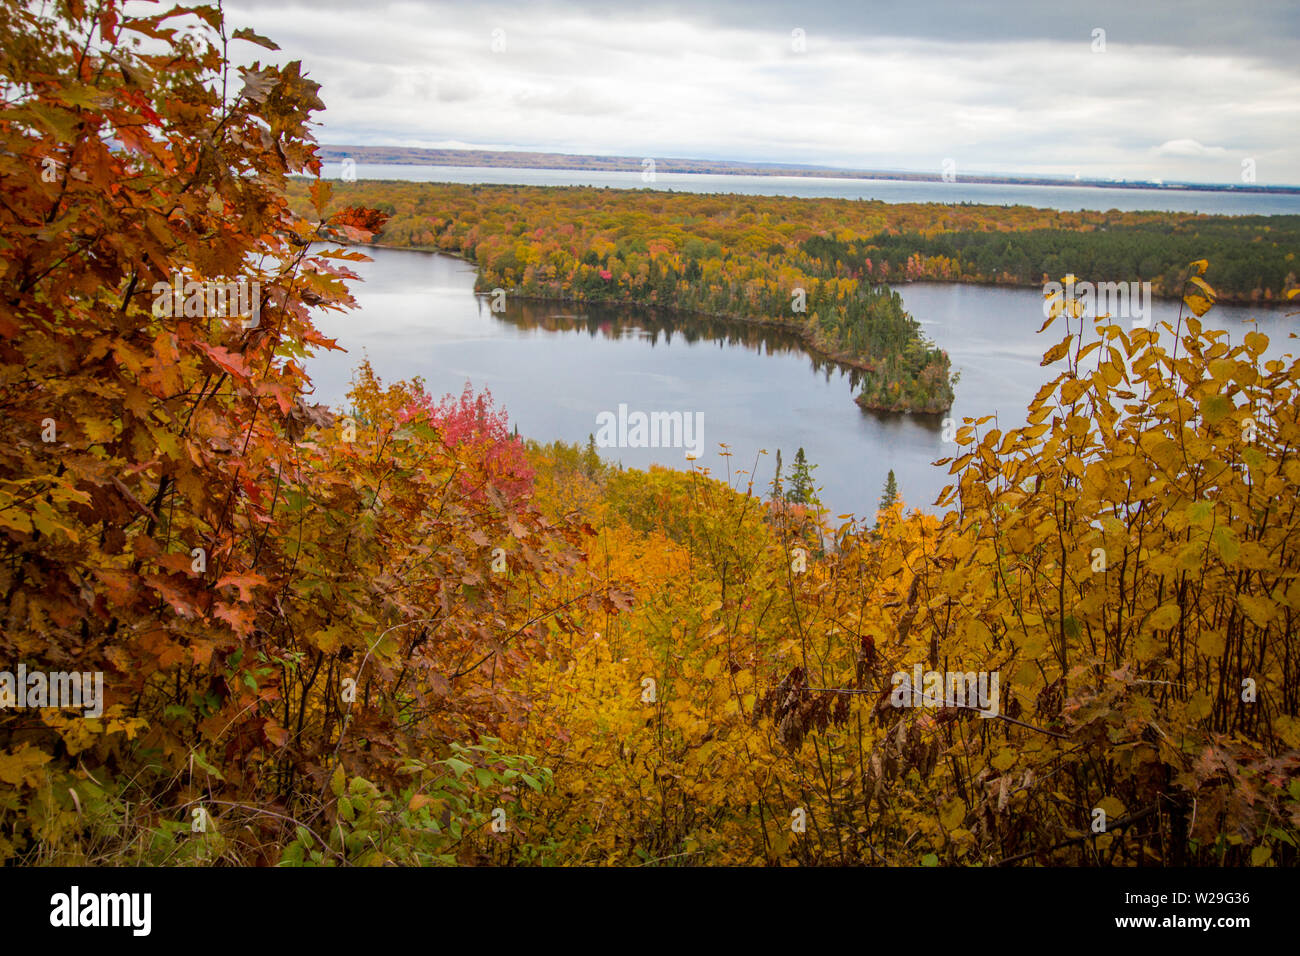 Michigan Herbst Scenic Panorama. Lebendige Herbstfarbe im nördlichen Michigan Wald mit dem weiten blauen Wasser des Lake Superior im Hintergrund. Stockfoto